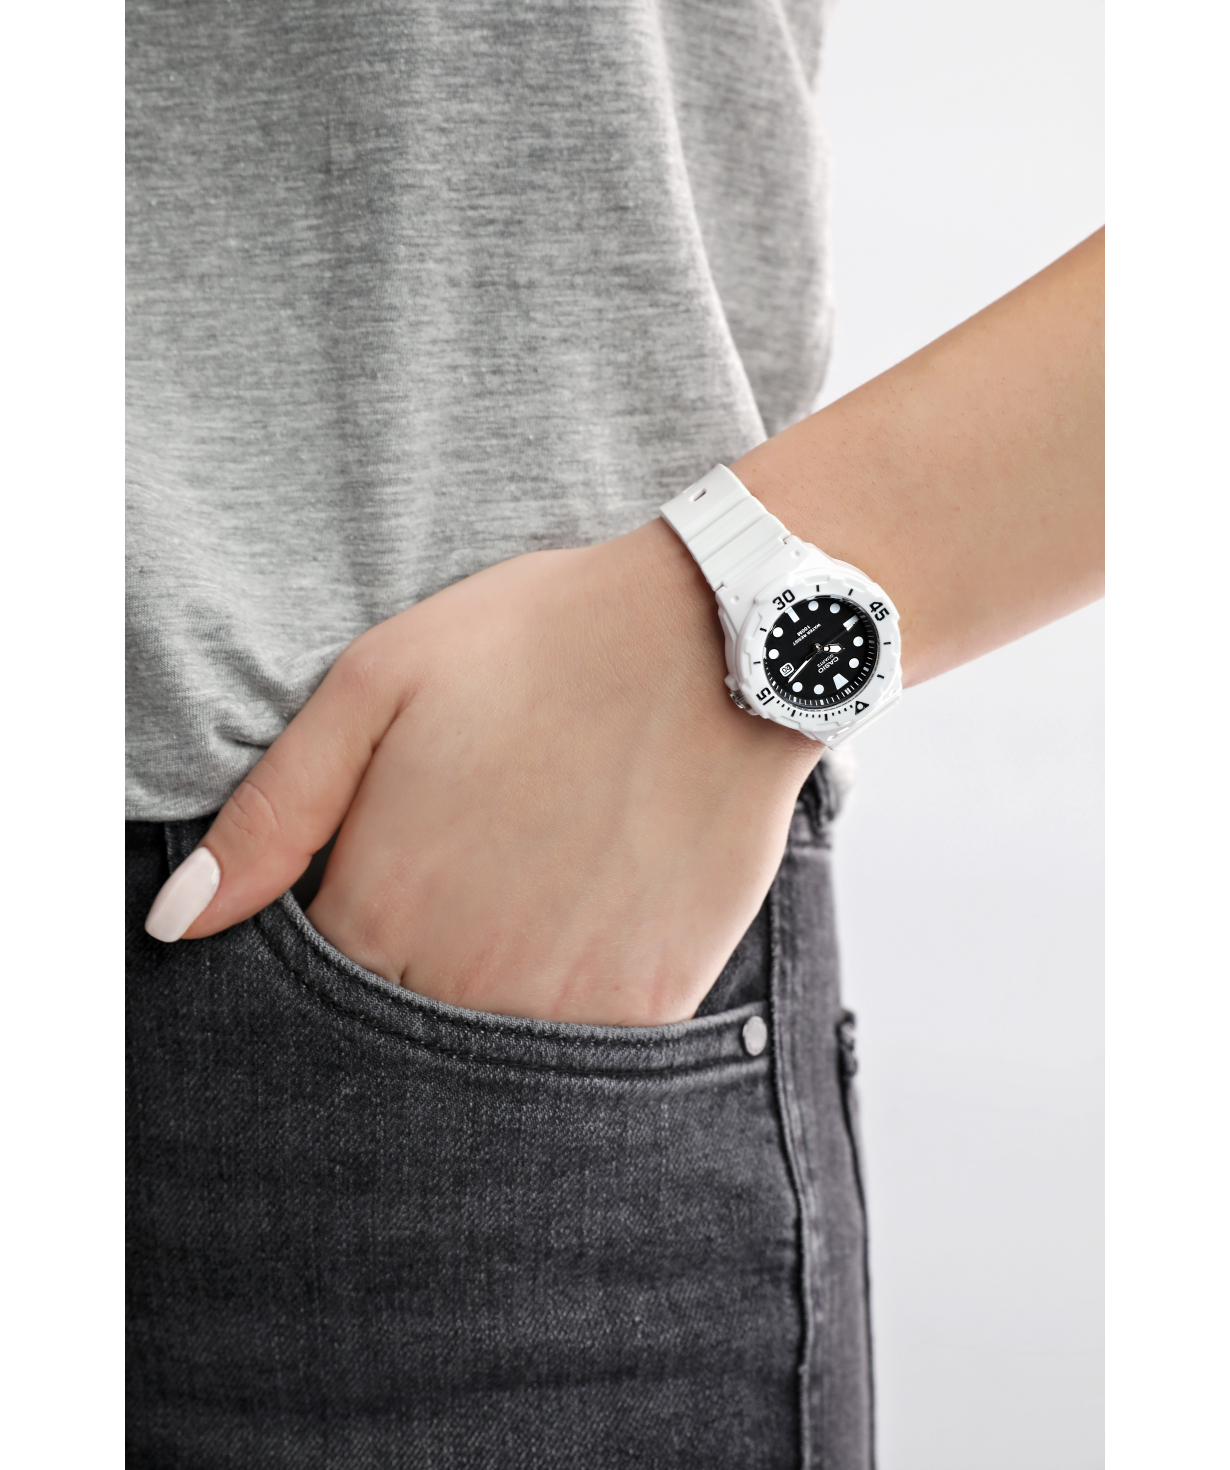 Wristwatch `Casio` LRW-200H-1EVDF